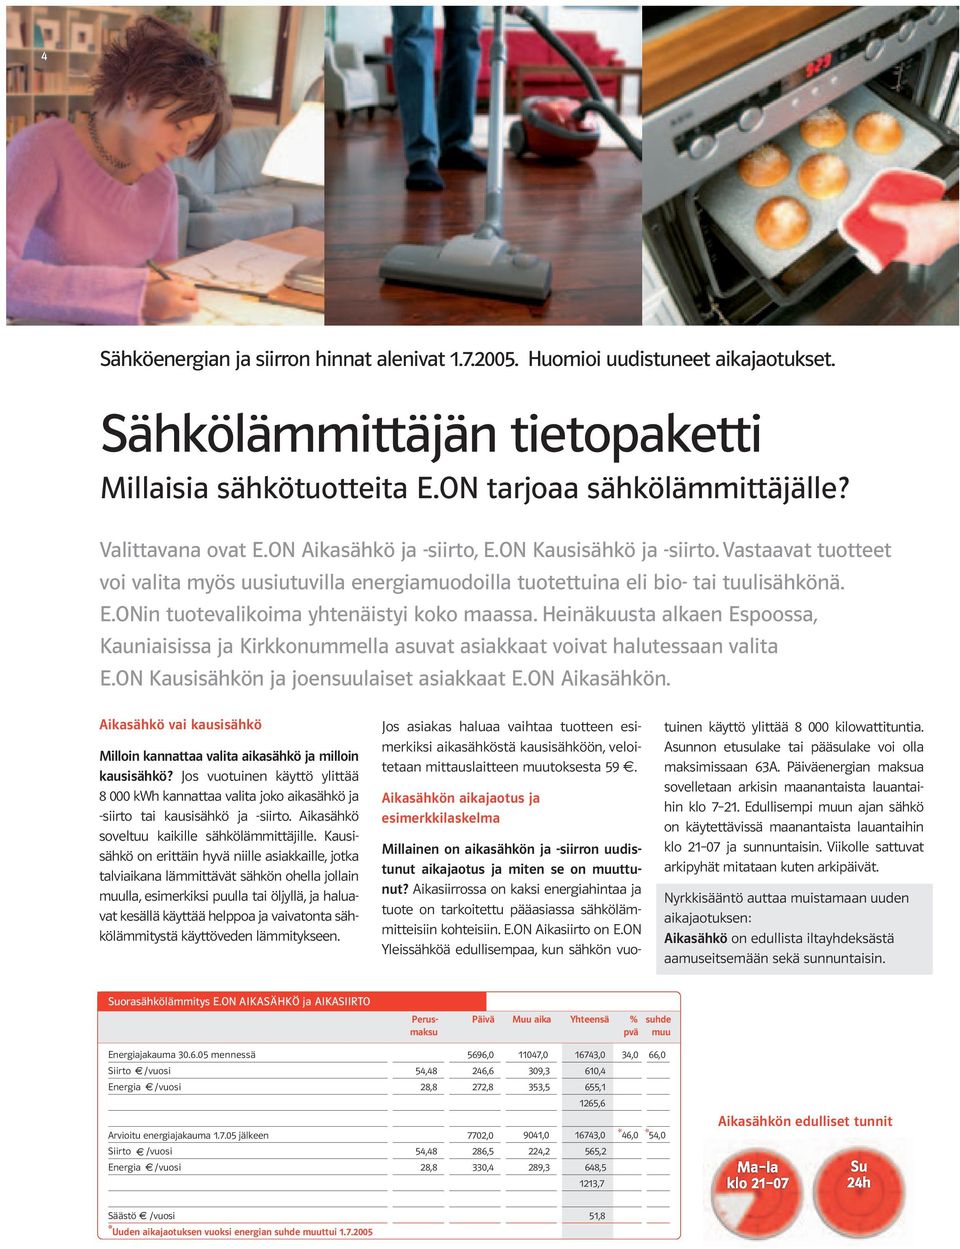 Heinäkuusta alkaen Espoossa, Kauniaisissa ja Kirkkonummella asuvat asiakkaat voivat halutessaan valita E.ON Kausisähkön ja joensuulaiset asiakkaat E.ON Aikasähkön.